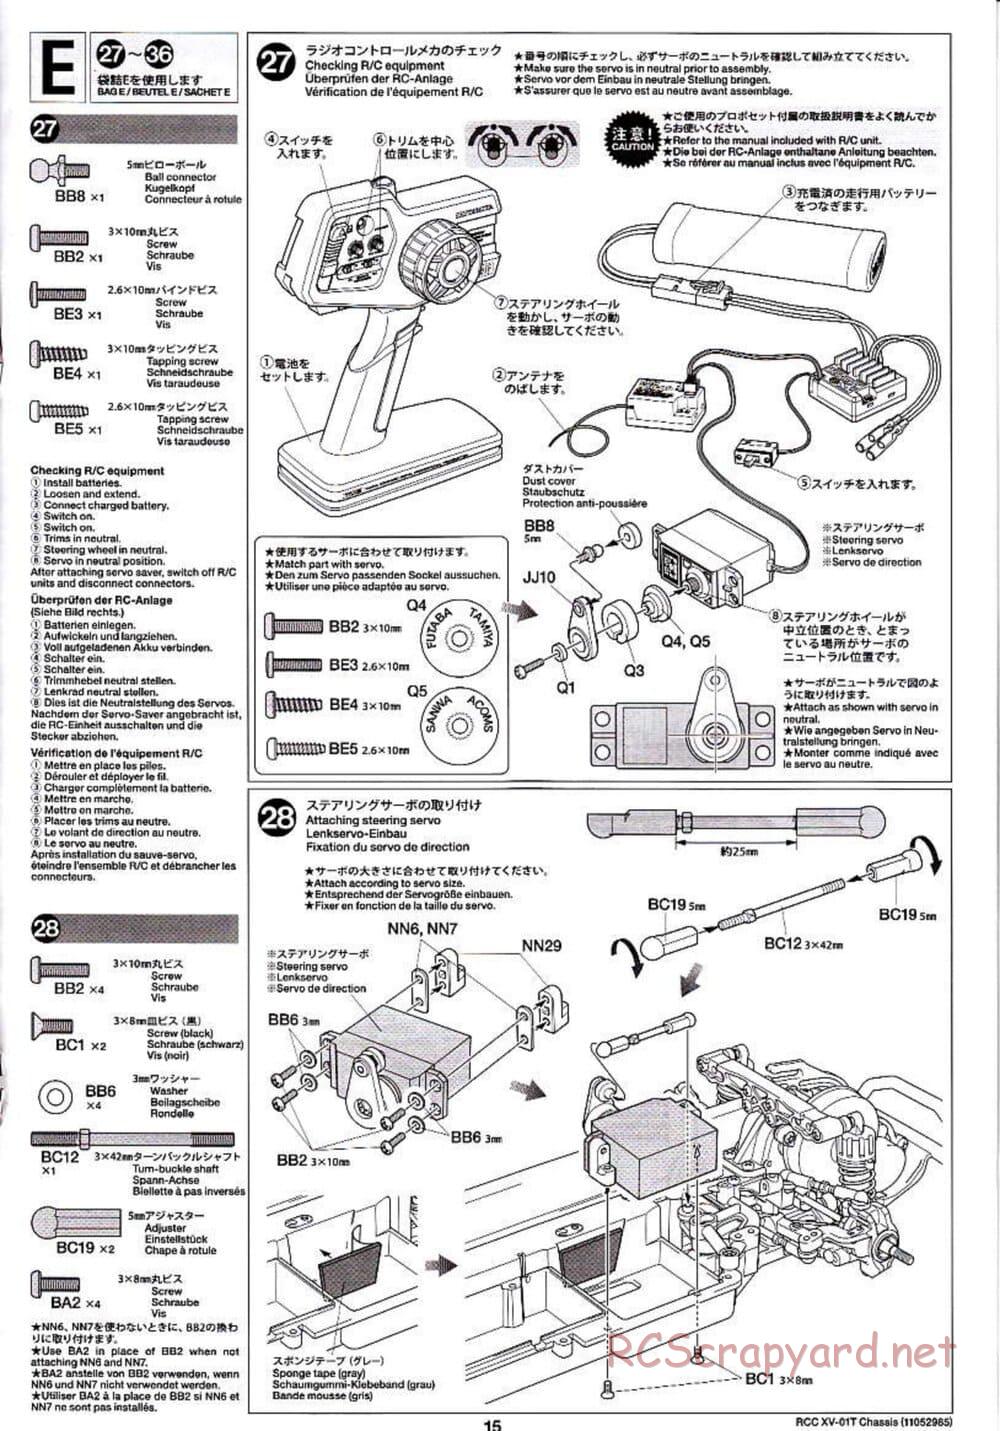 Tamiya - XV-01T Chassis - Manual - Page 15